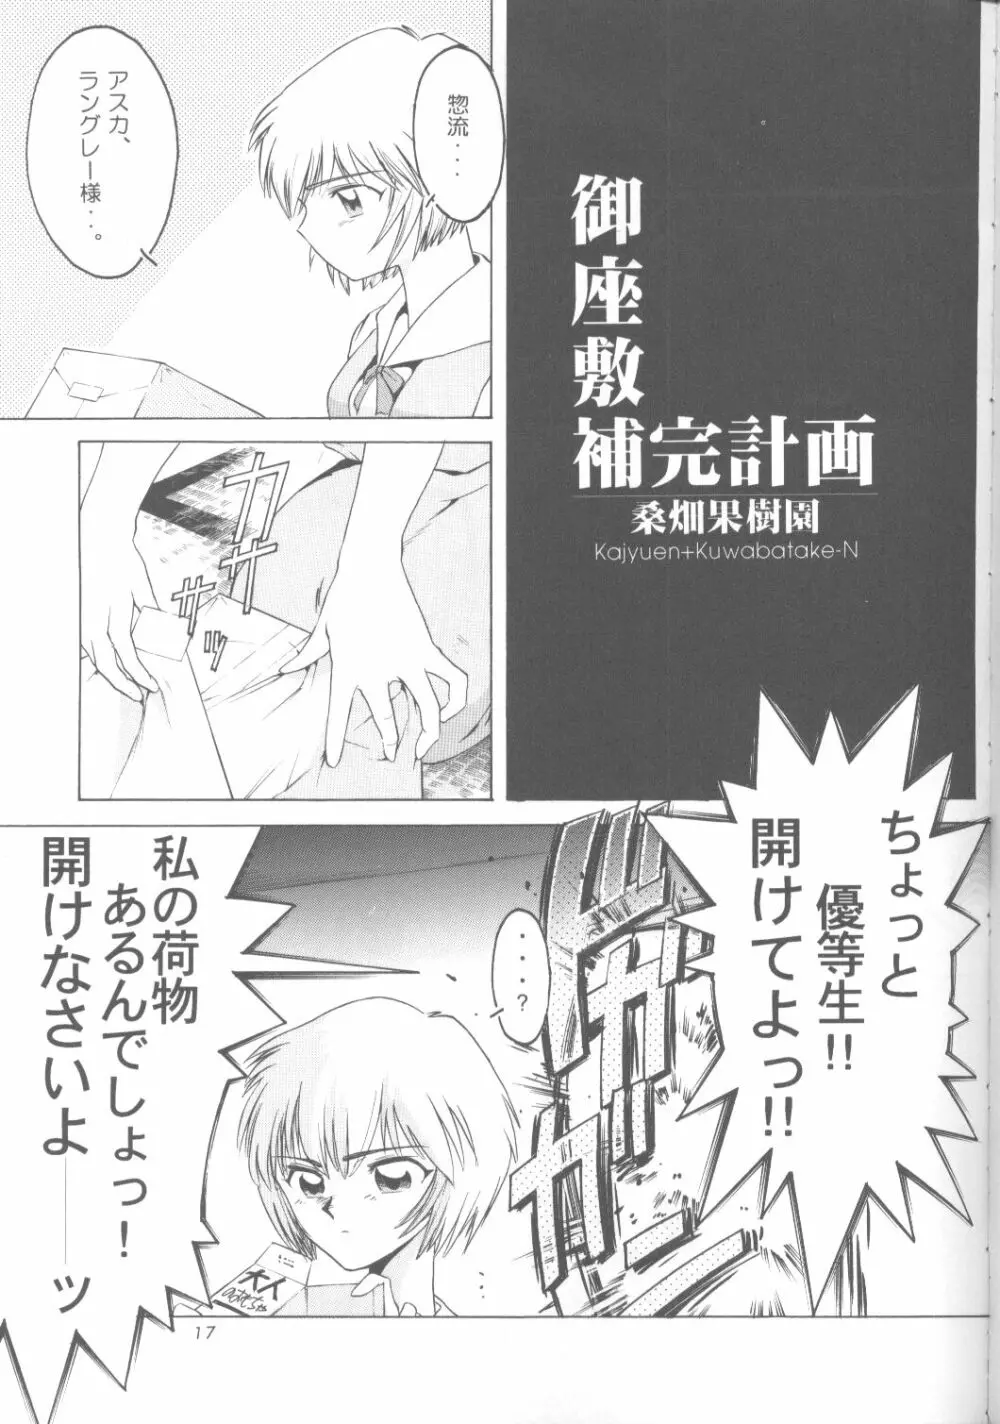 綾波零式 Ayanami Zero Spec 16ページ